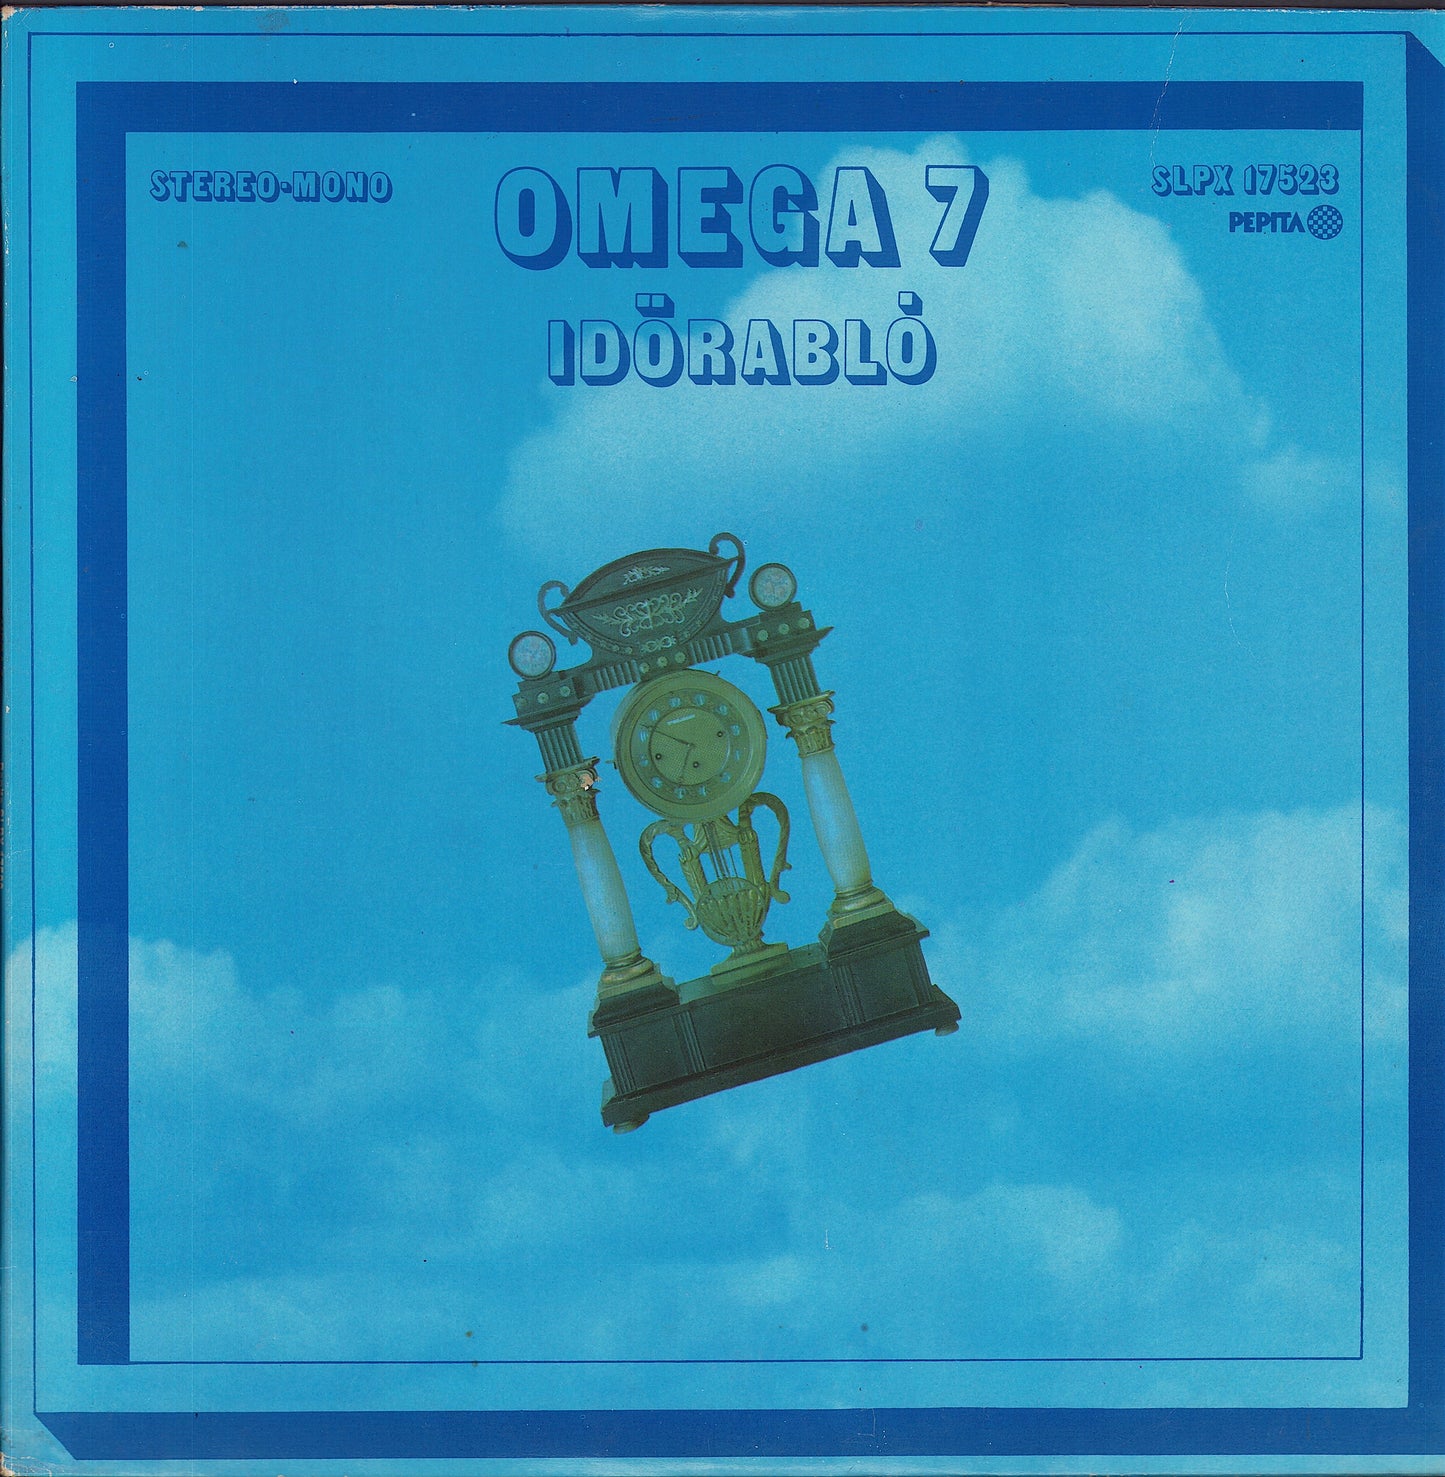 Omega - Omega 7: Időrabló Vinyl LP